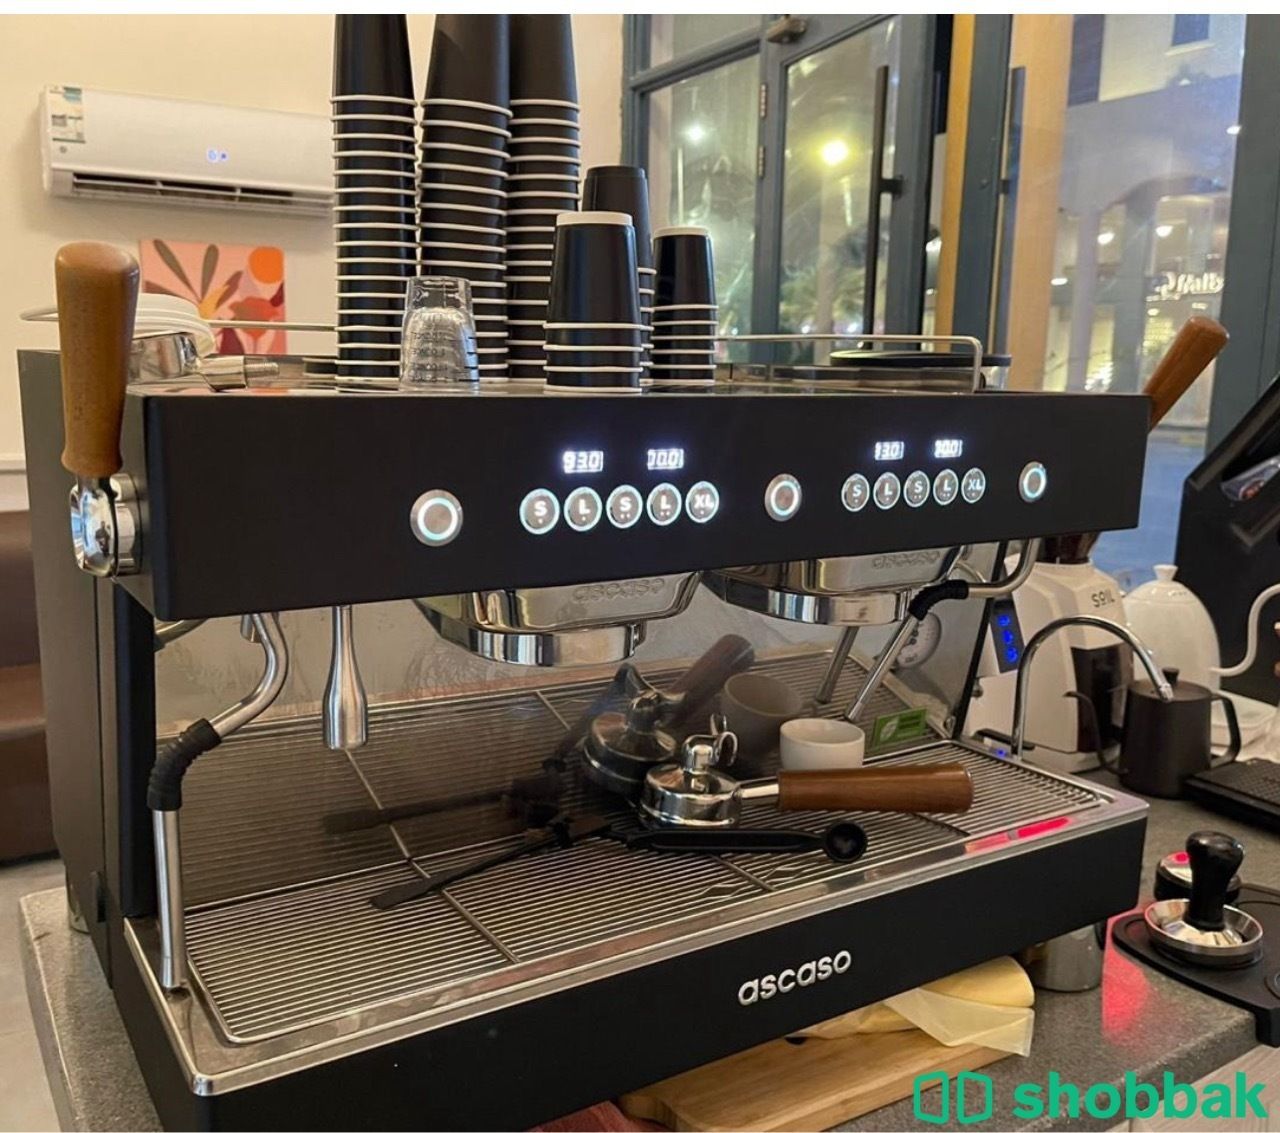 ماكينة قهوة جديدة استعمال اقل من سنة  شباك السعودية